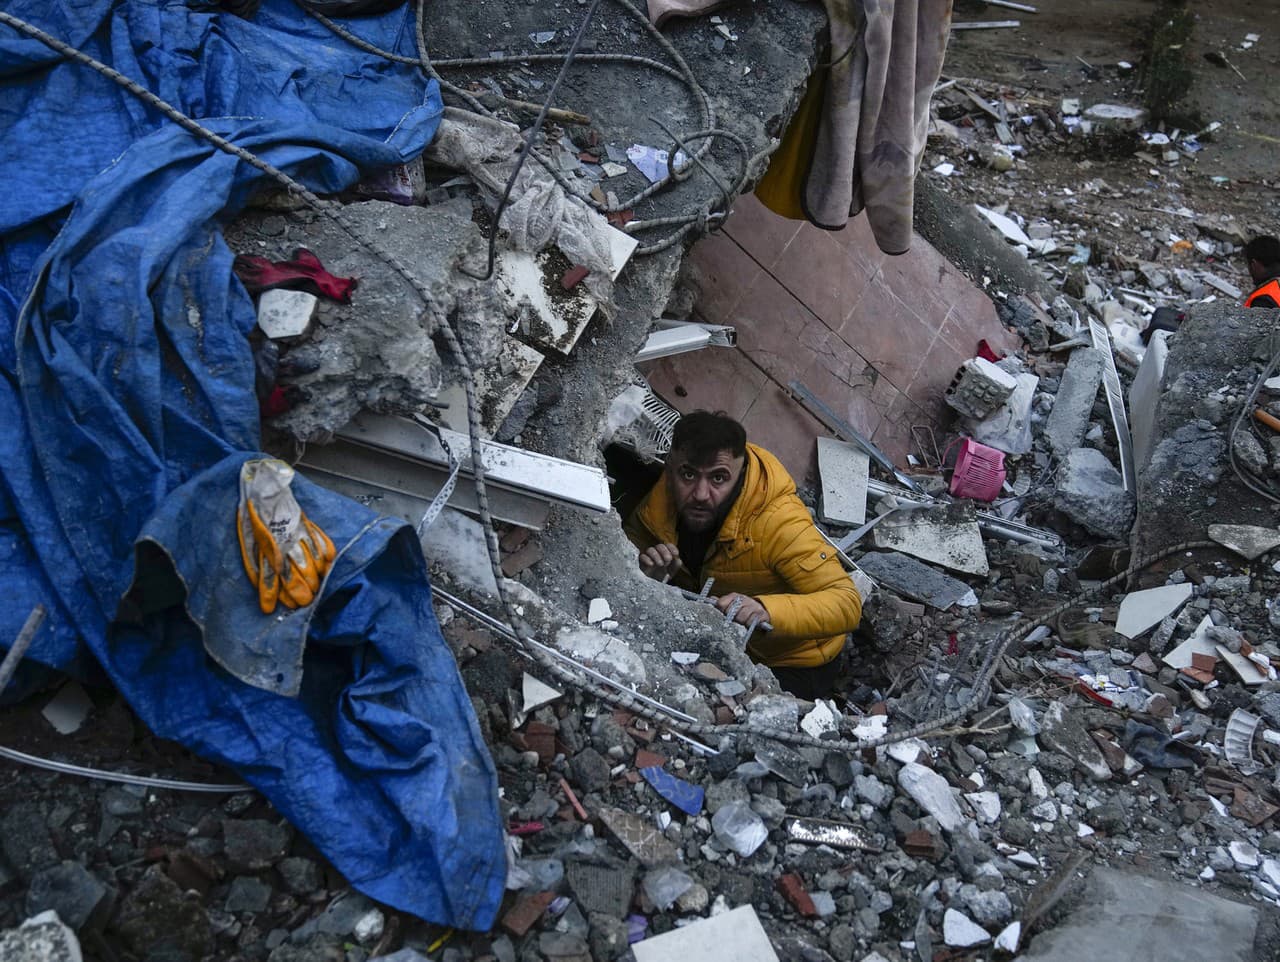  Muž hľadá preživších po silnom zemetrasení v tureckom meste Adana